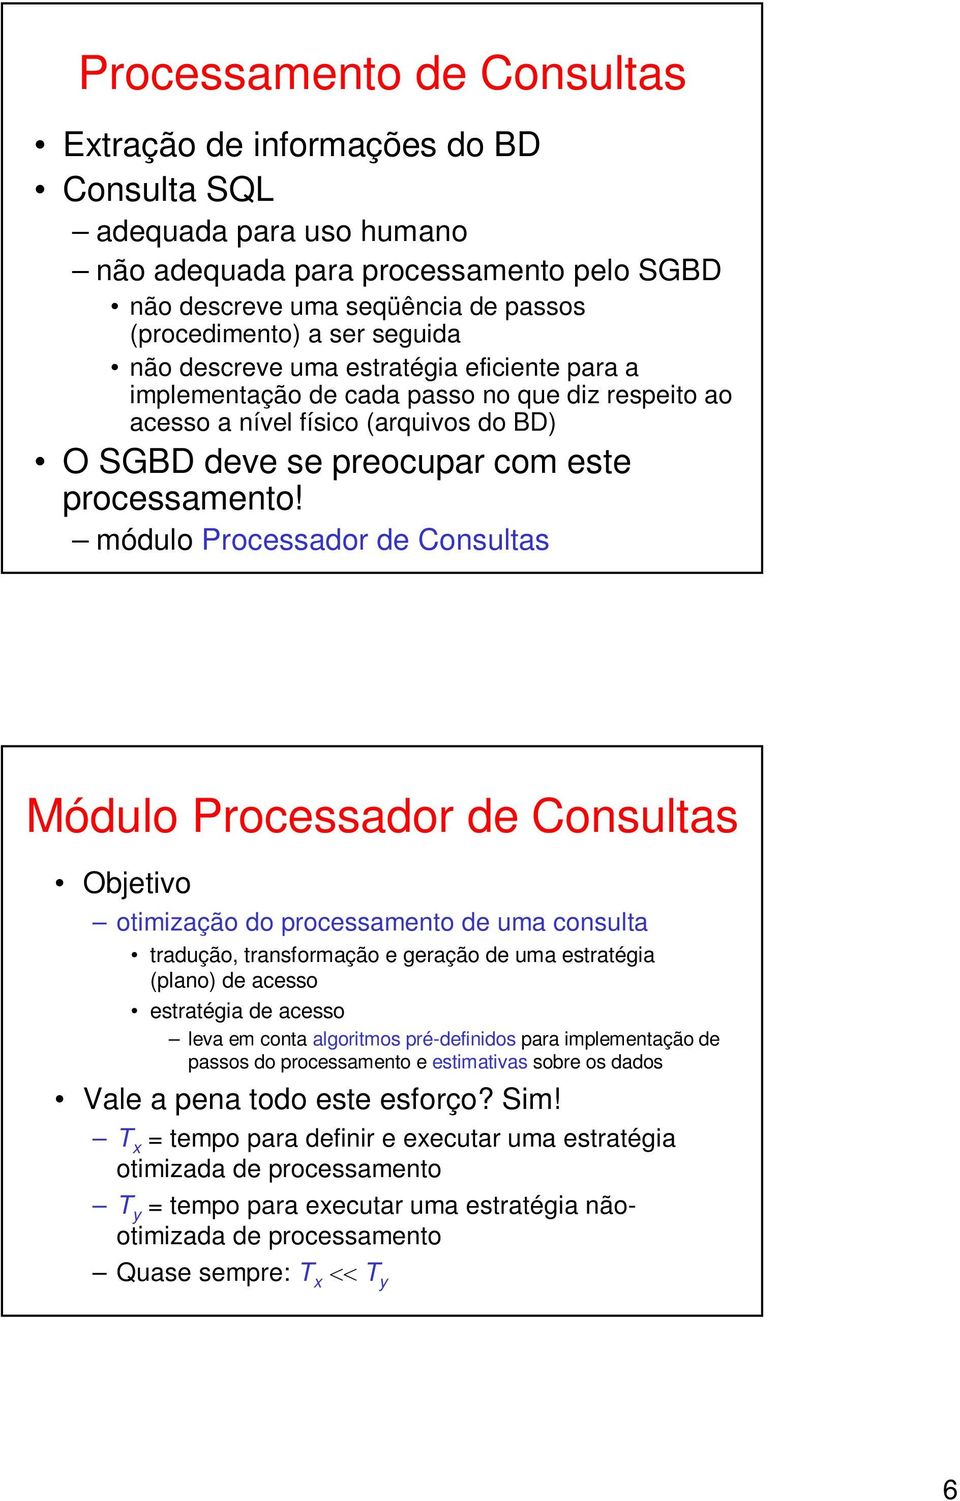 módulo Processador de Consultas Módulo Processador de Consultas Objetivo otimização do processamento de uma consulta tradução, transformação e geração de uma estratégia (plano) de acesso estratégia